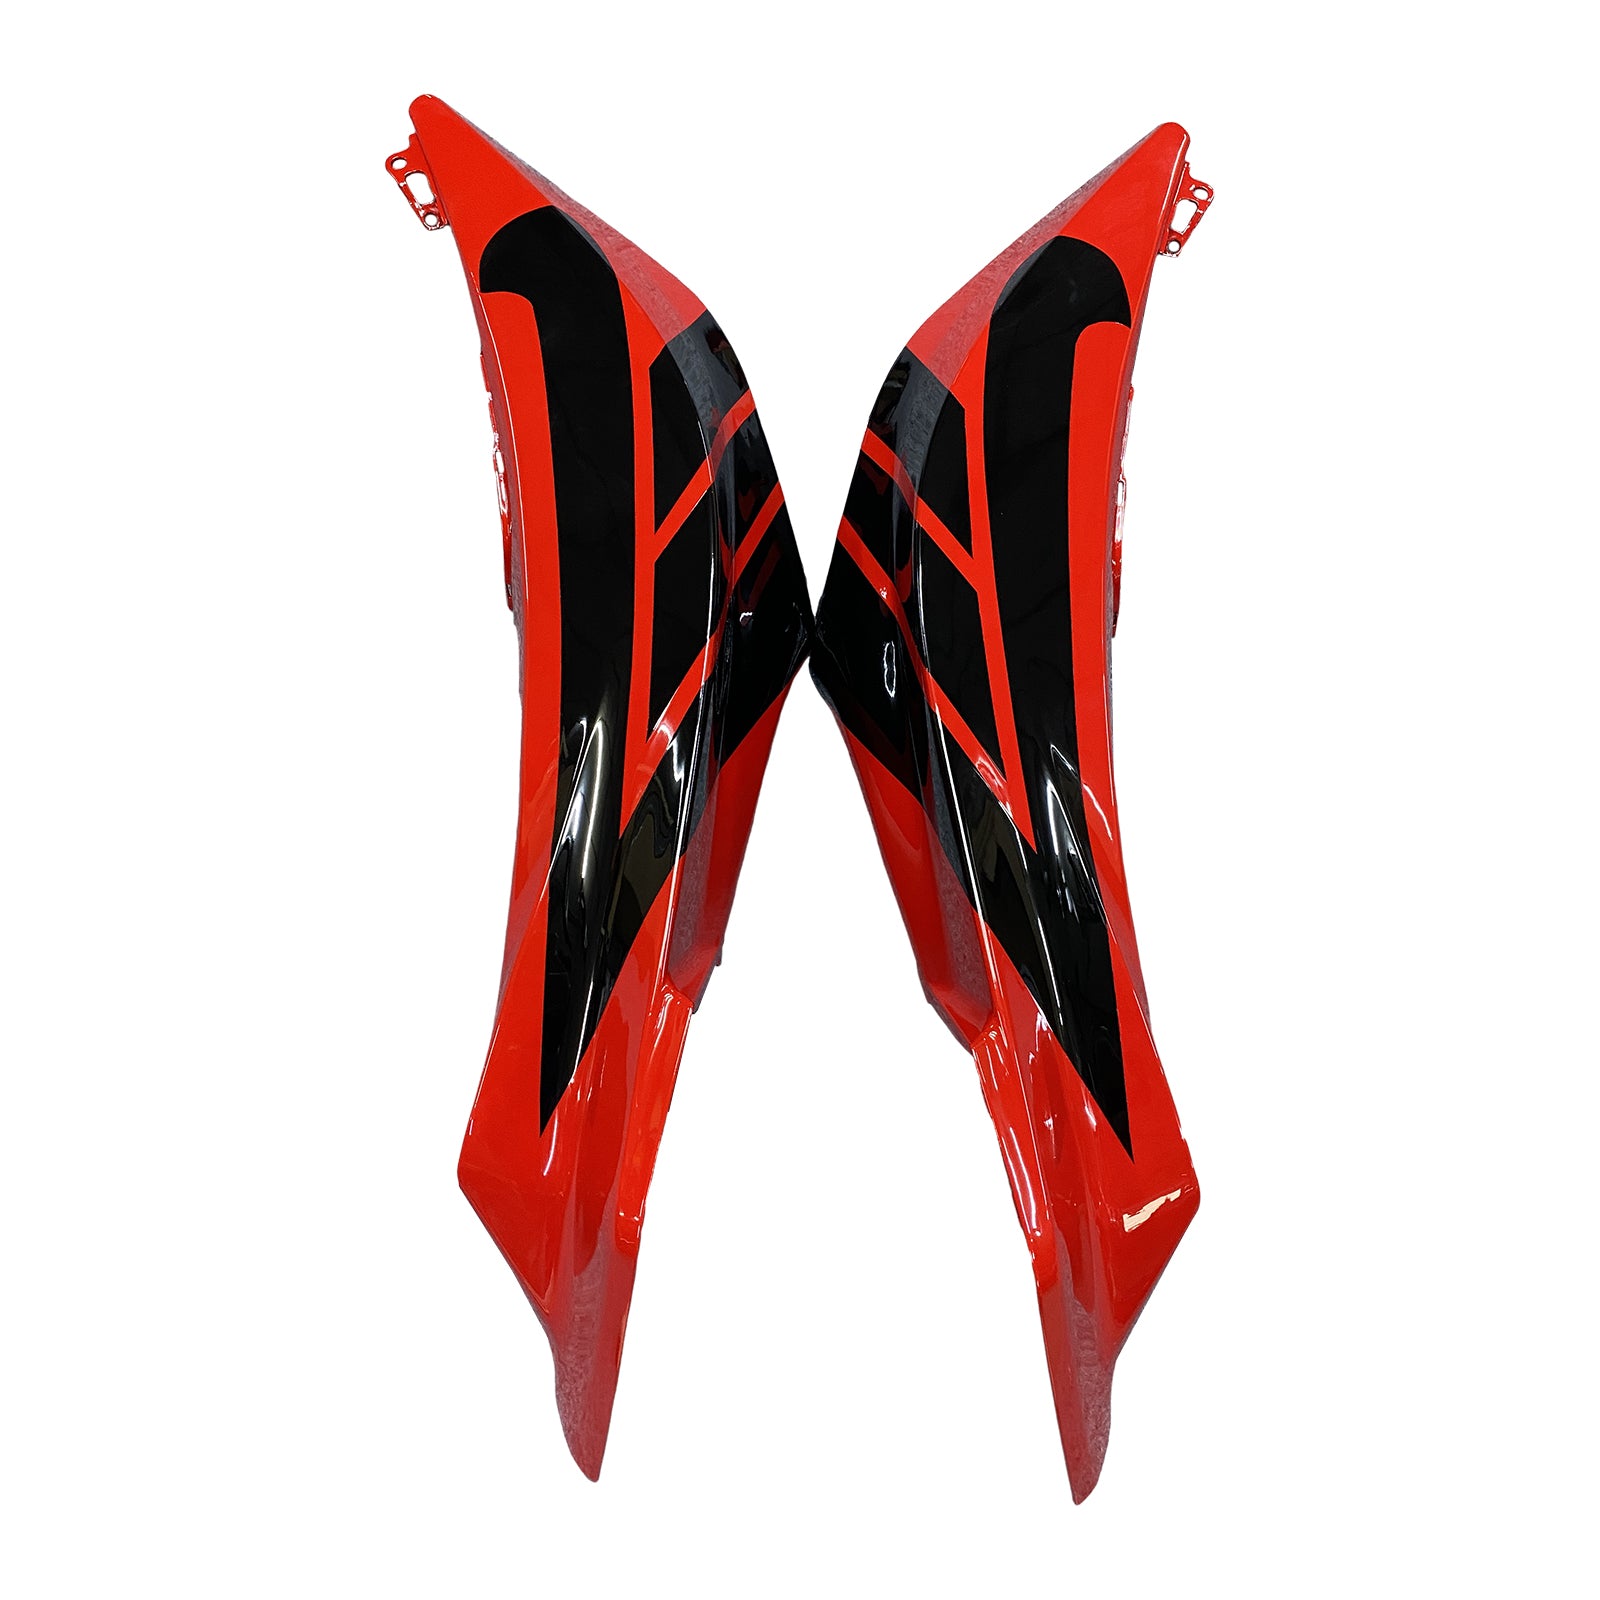 Amotopart 2009-2012 Honda CBR600RR Red&Black Fairing Kit